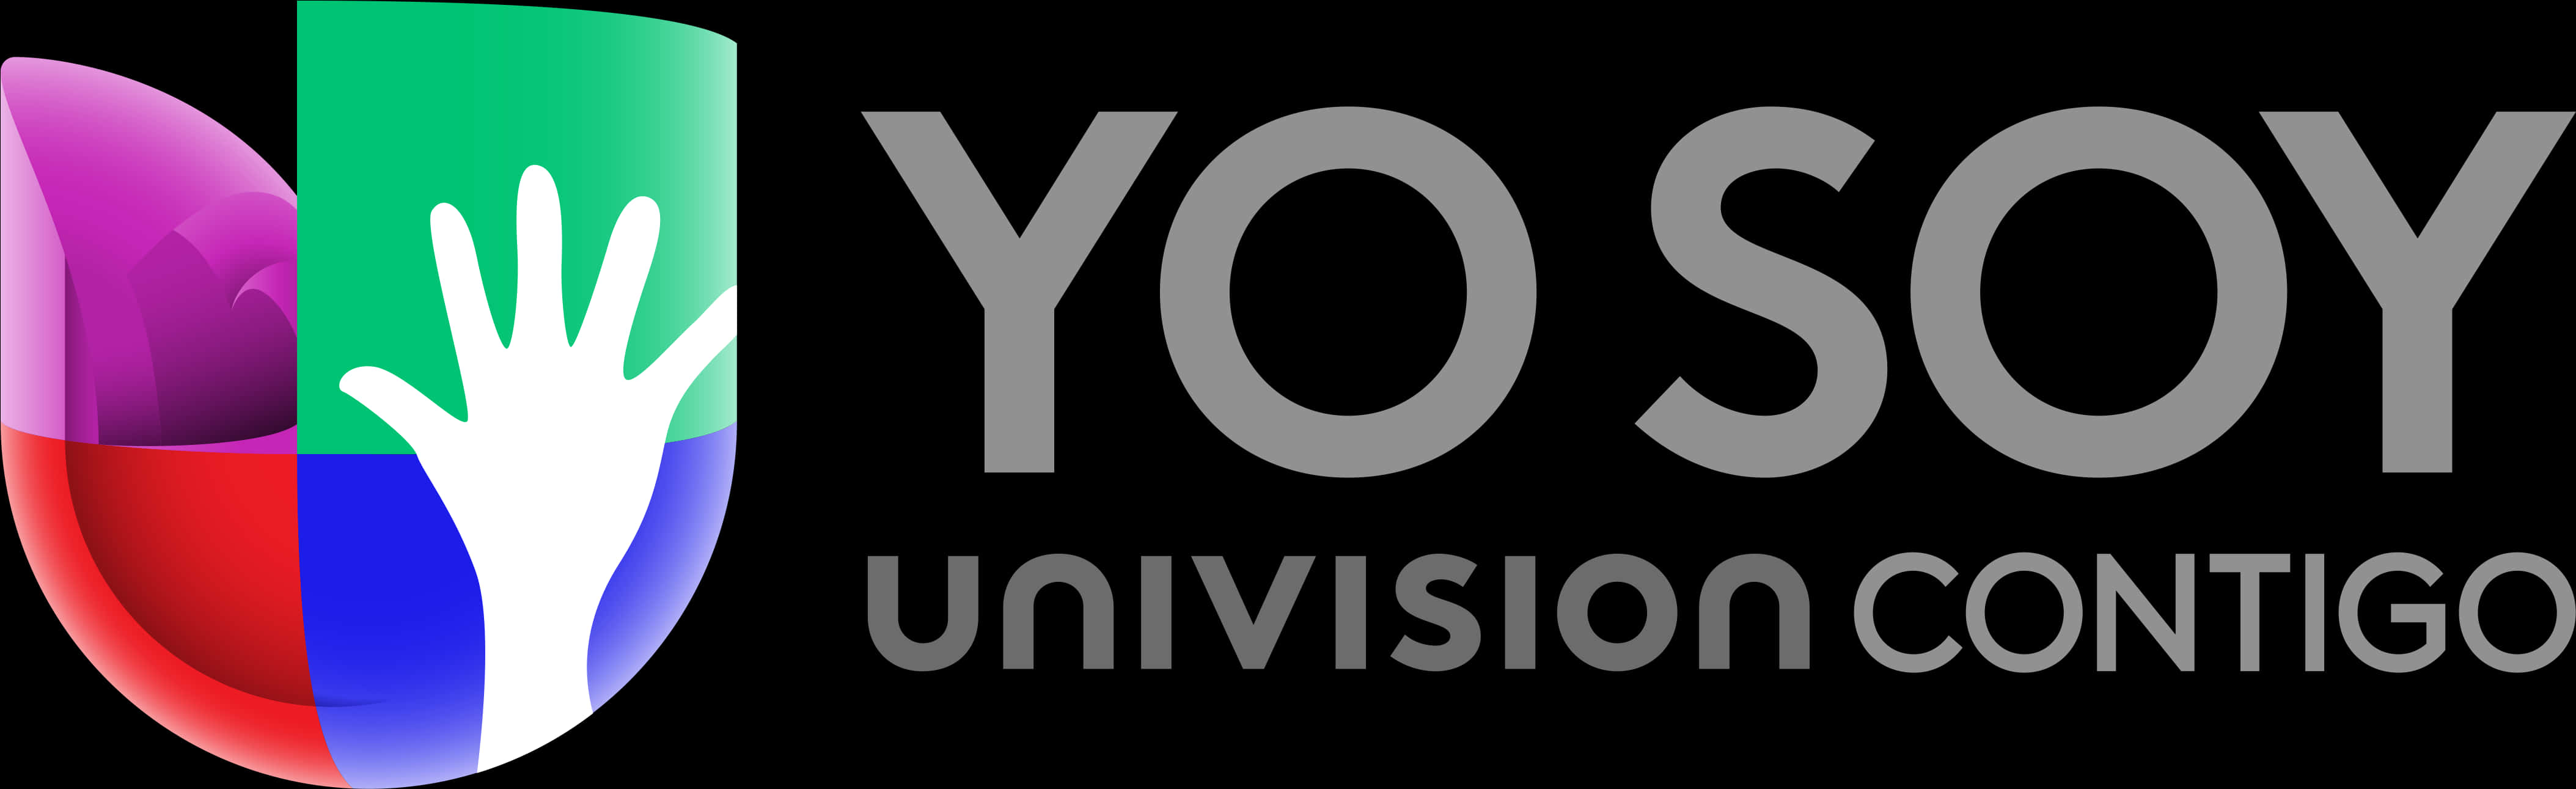 Univision Contigo Campaign Logo PNG image